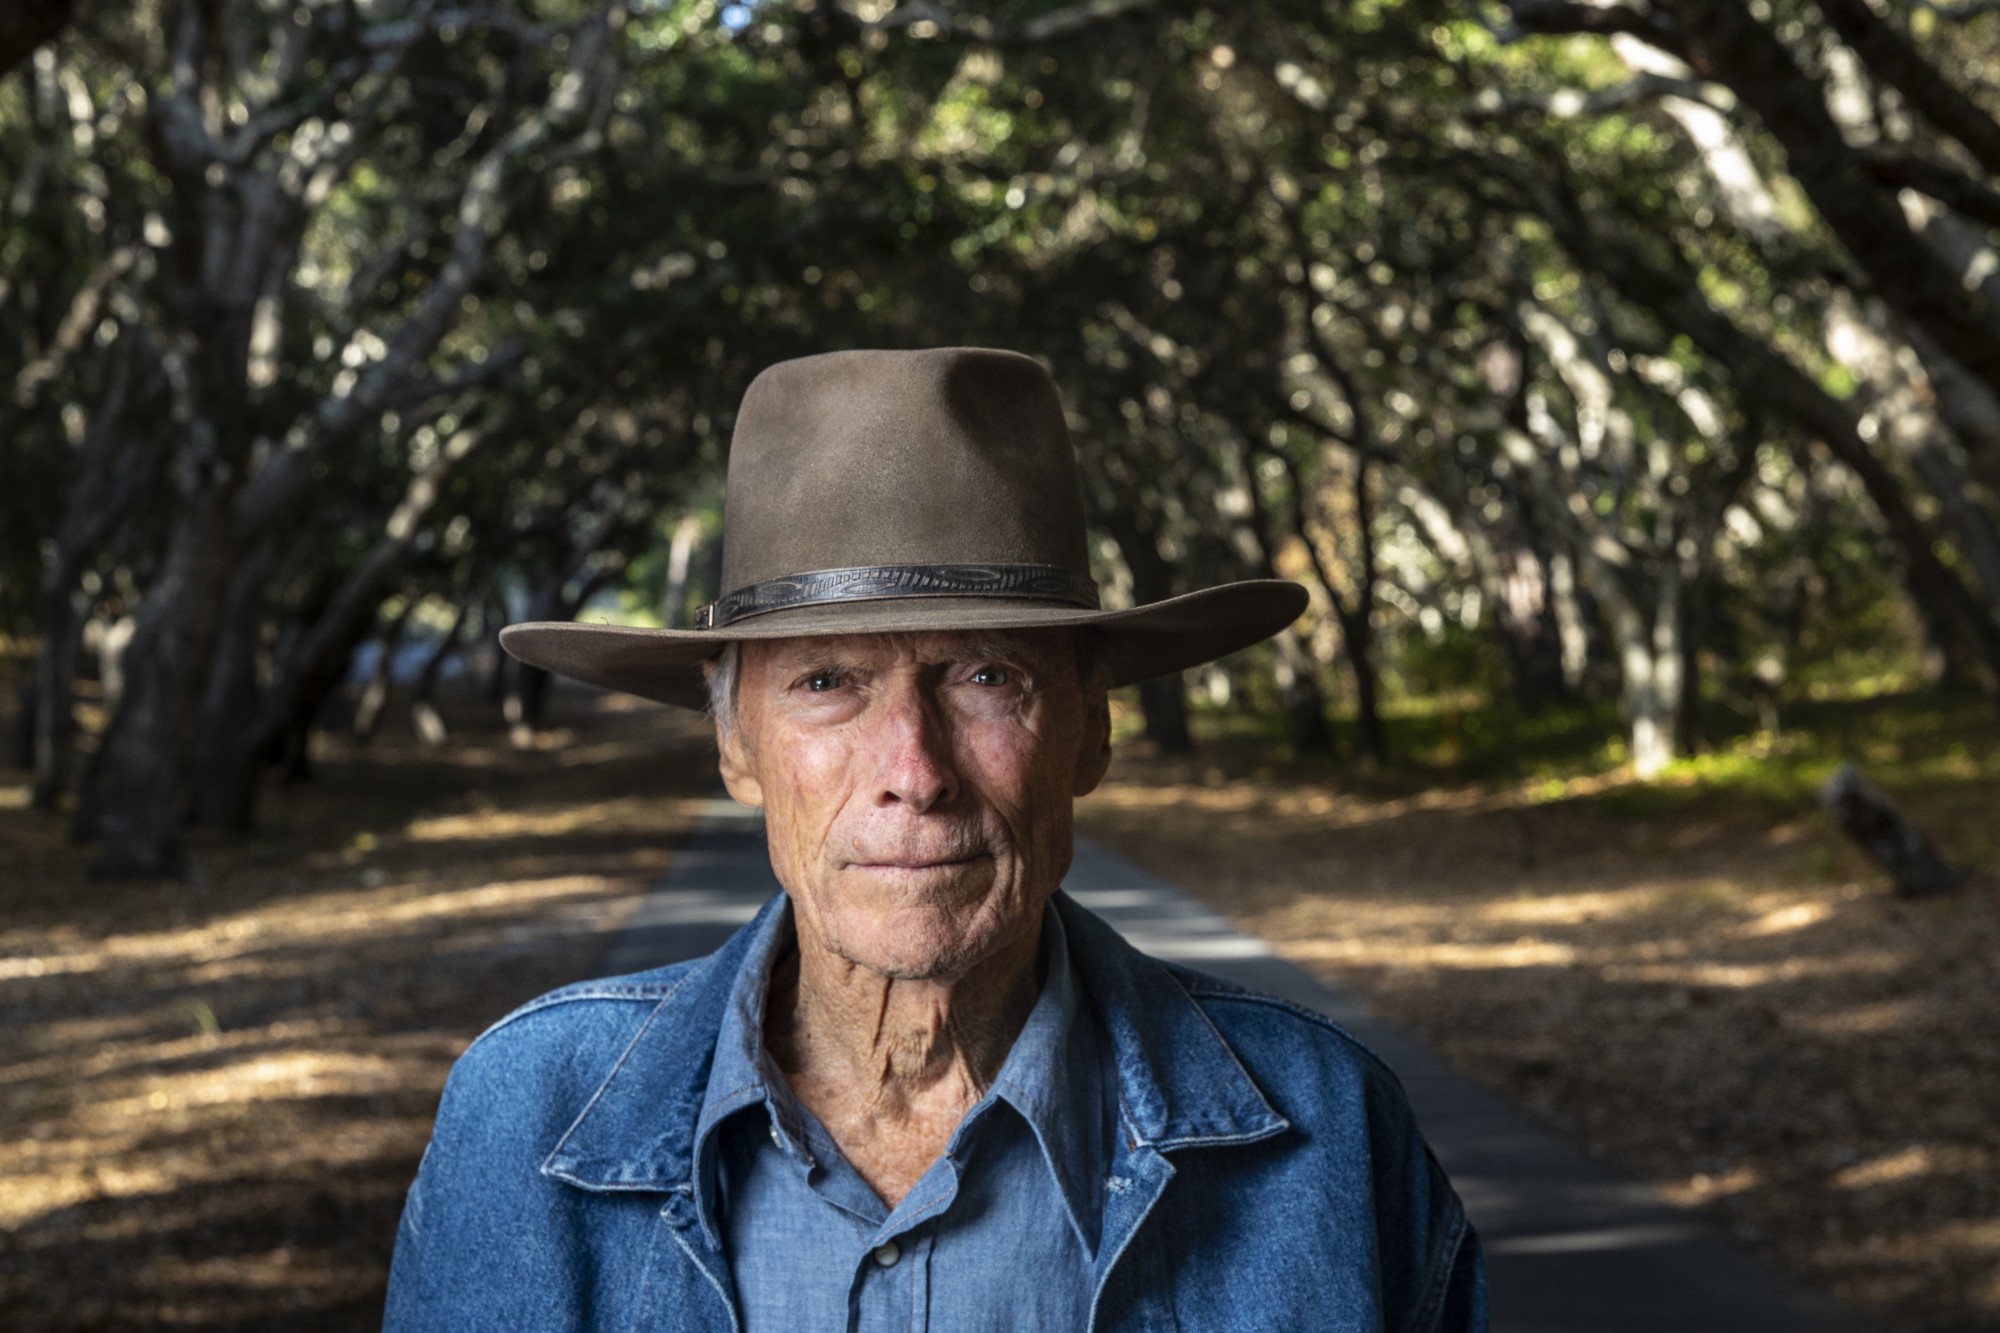 A sus 91 años, Clint Eastwood retoma su doble rol de director y actor en "Cry Macho", un western actualizado donde busca redimirse de cierto pasado.